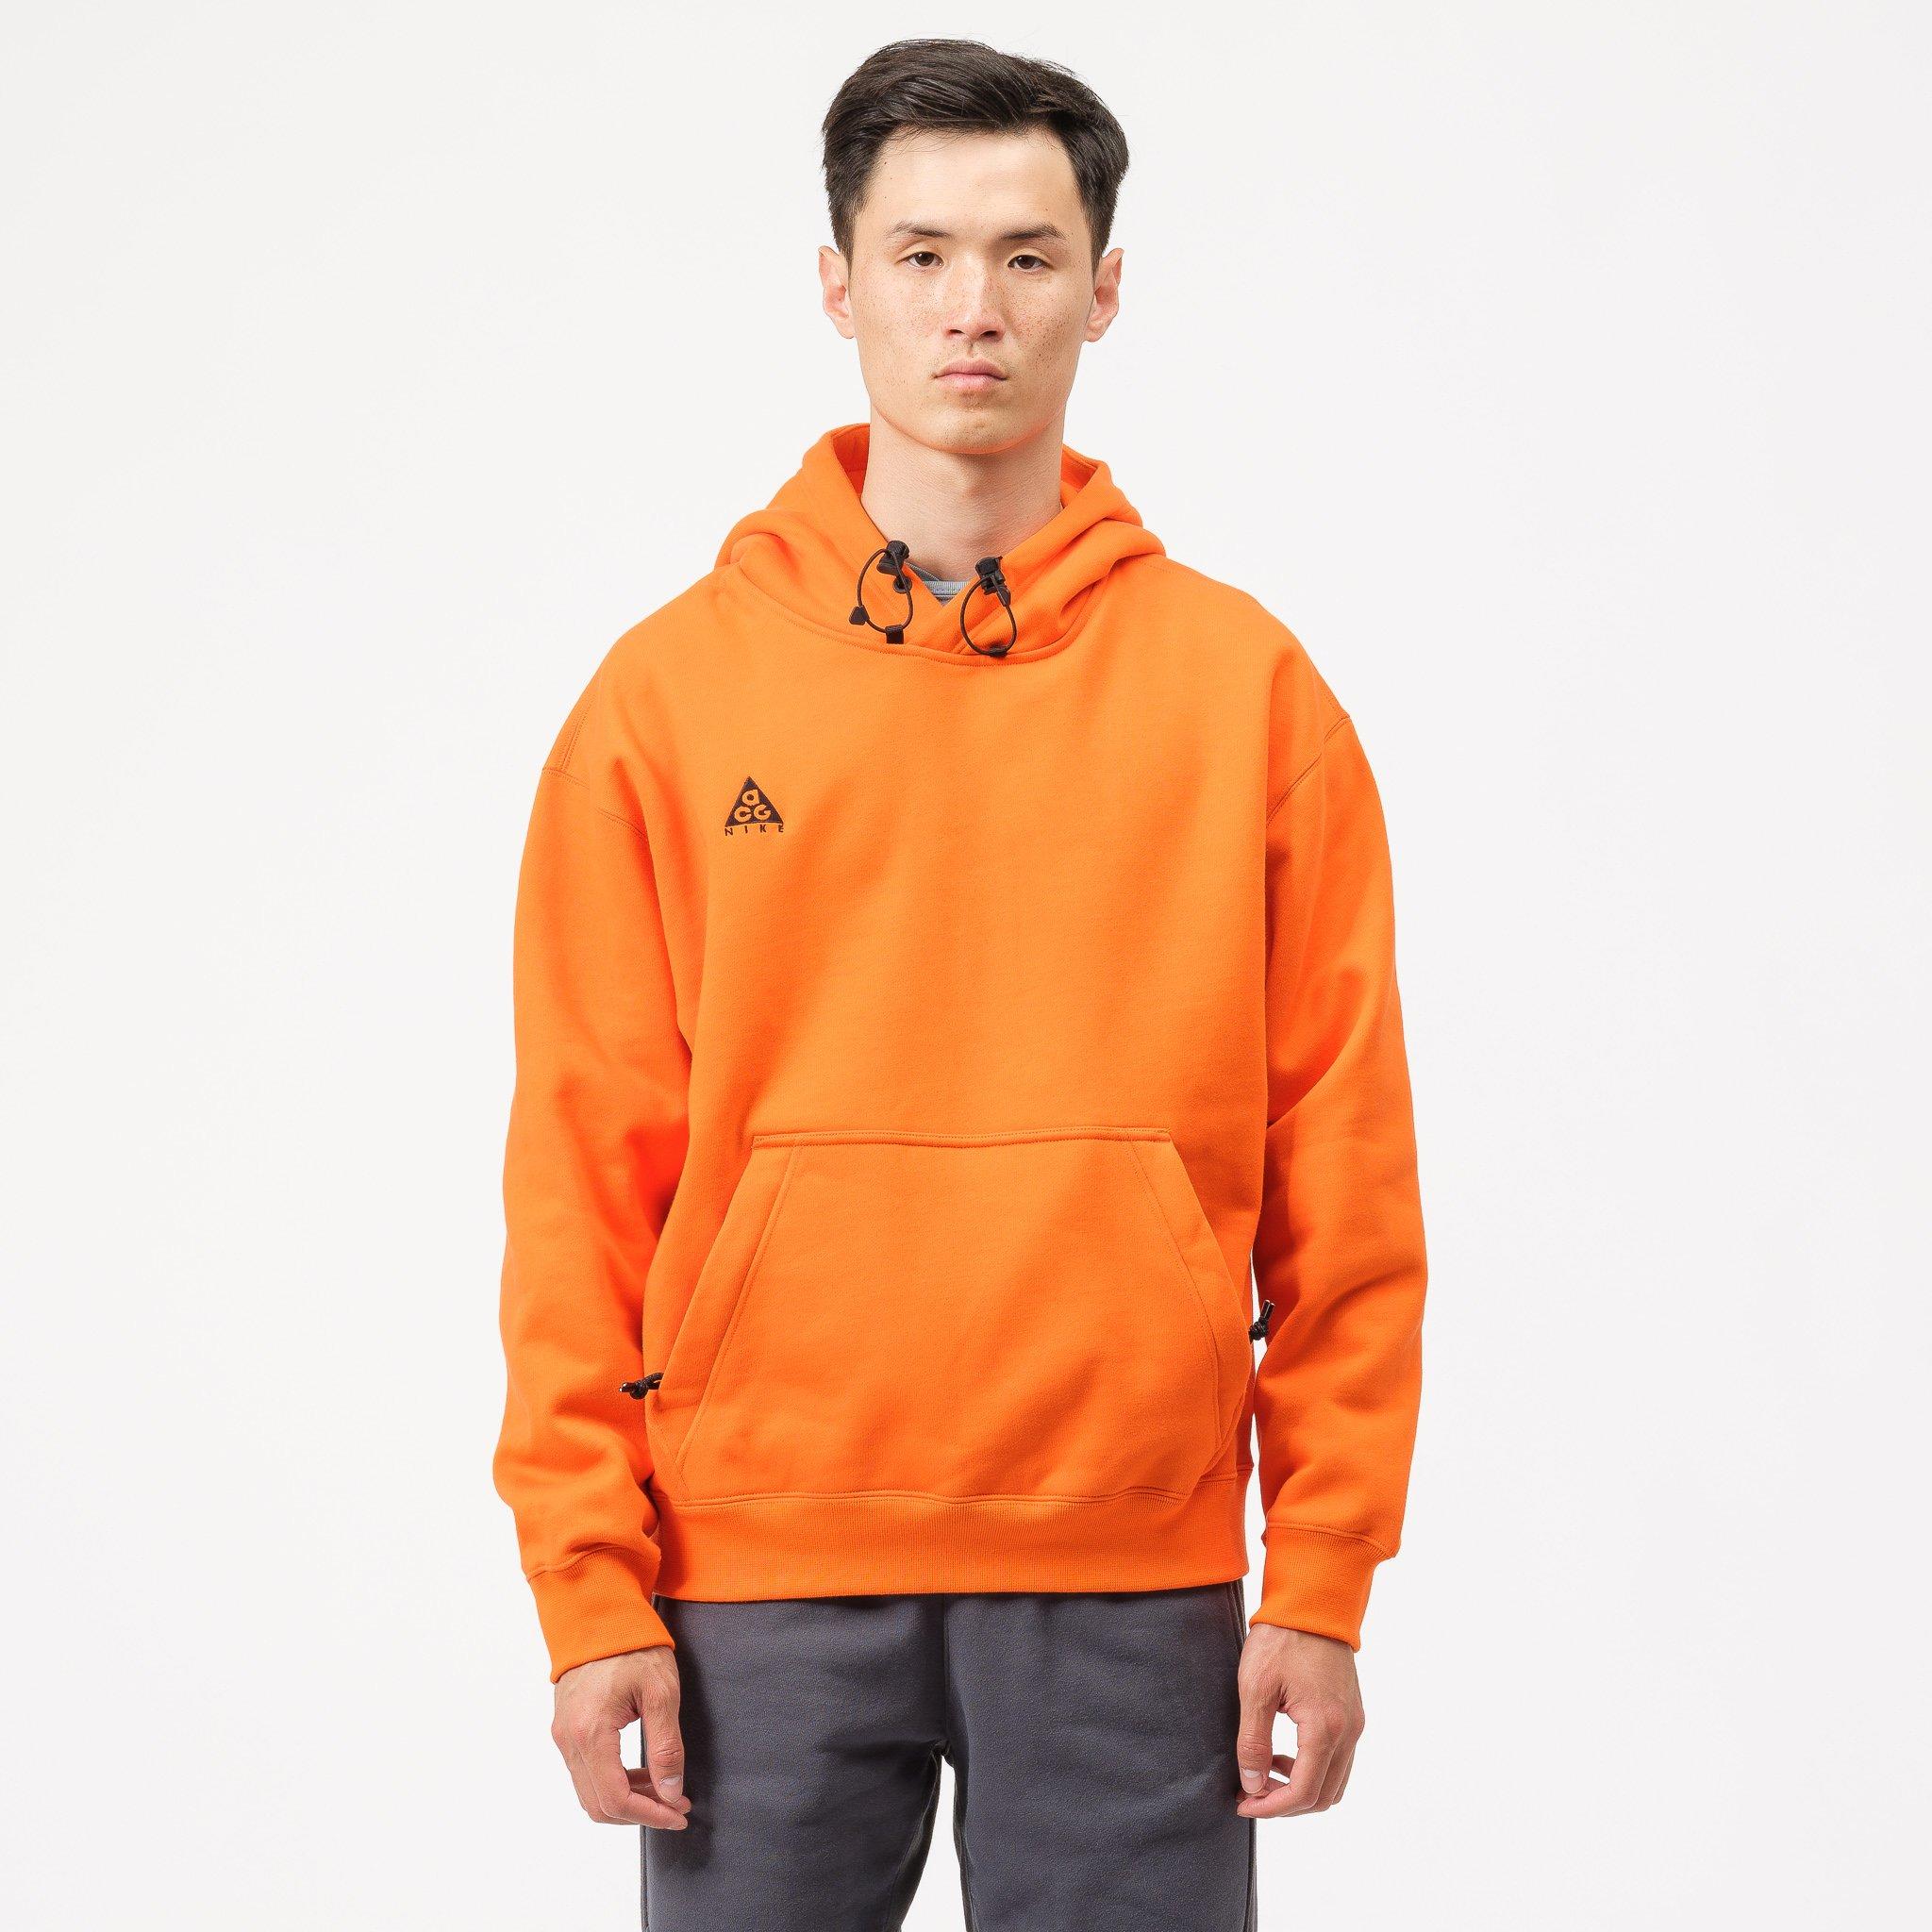 black nike hoodie with orange square